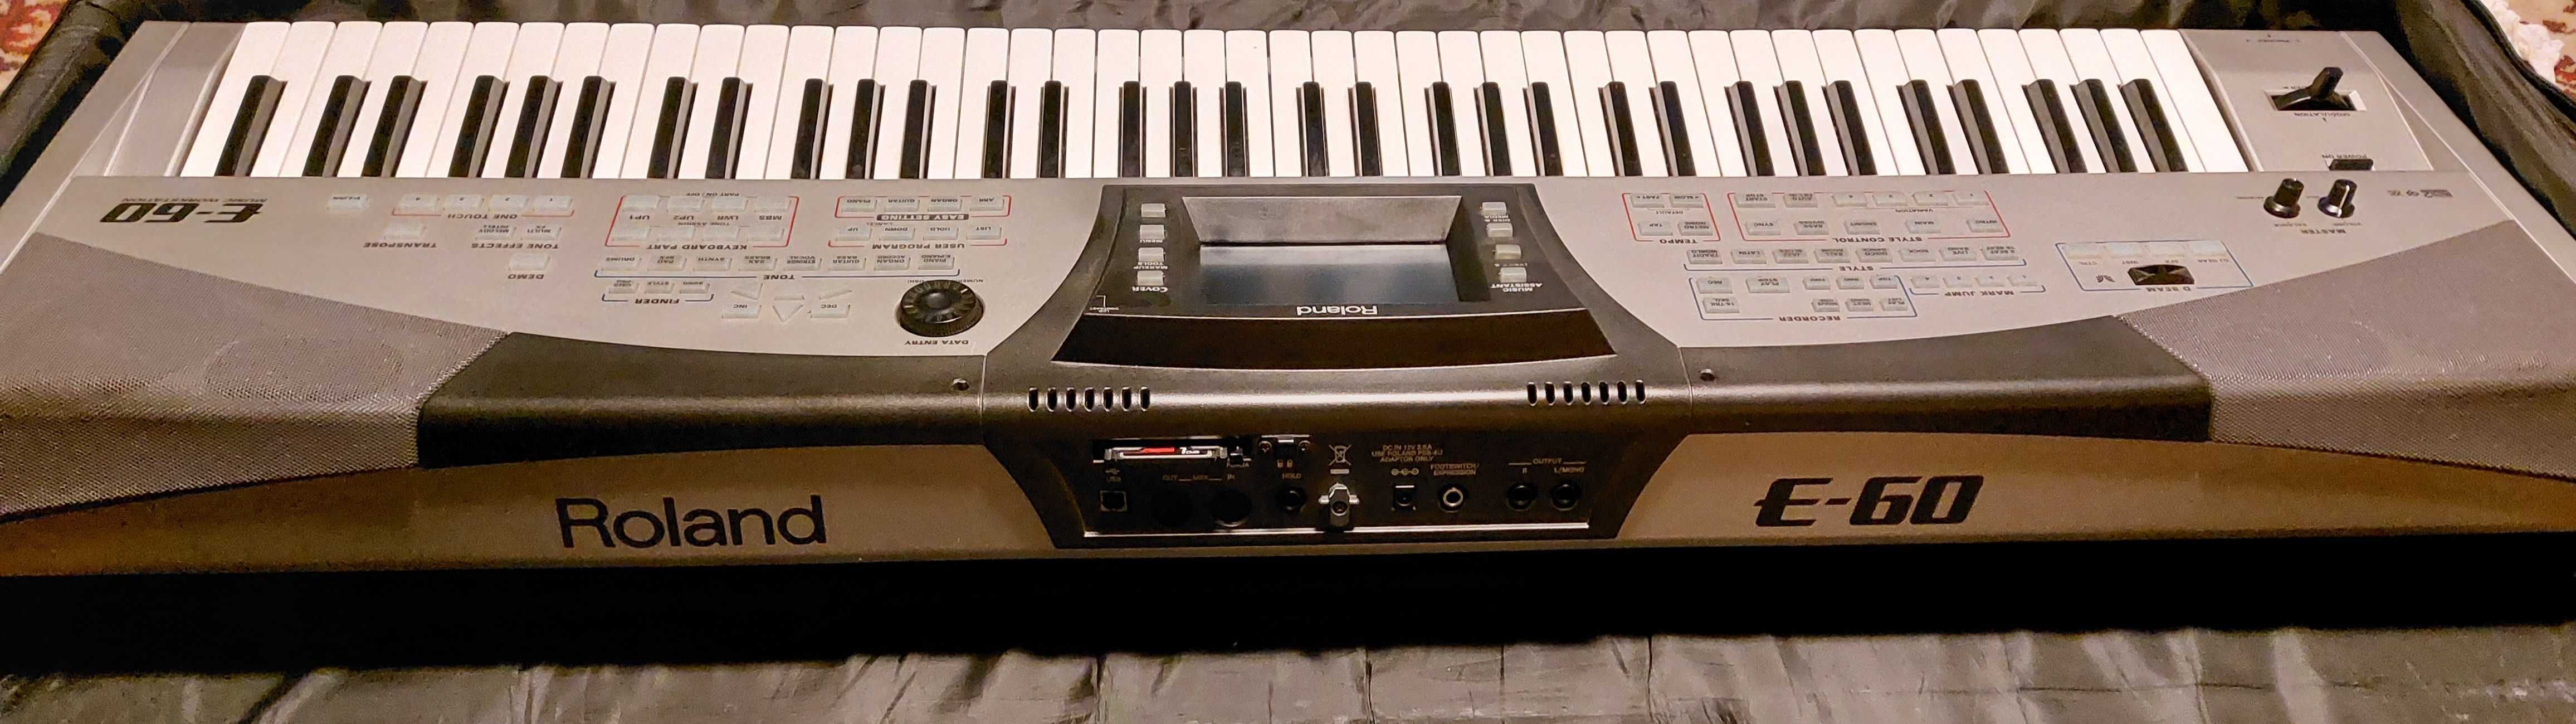 Keyboard Roland e-60